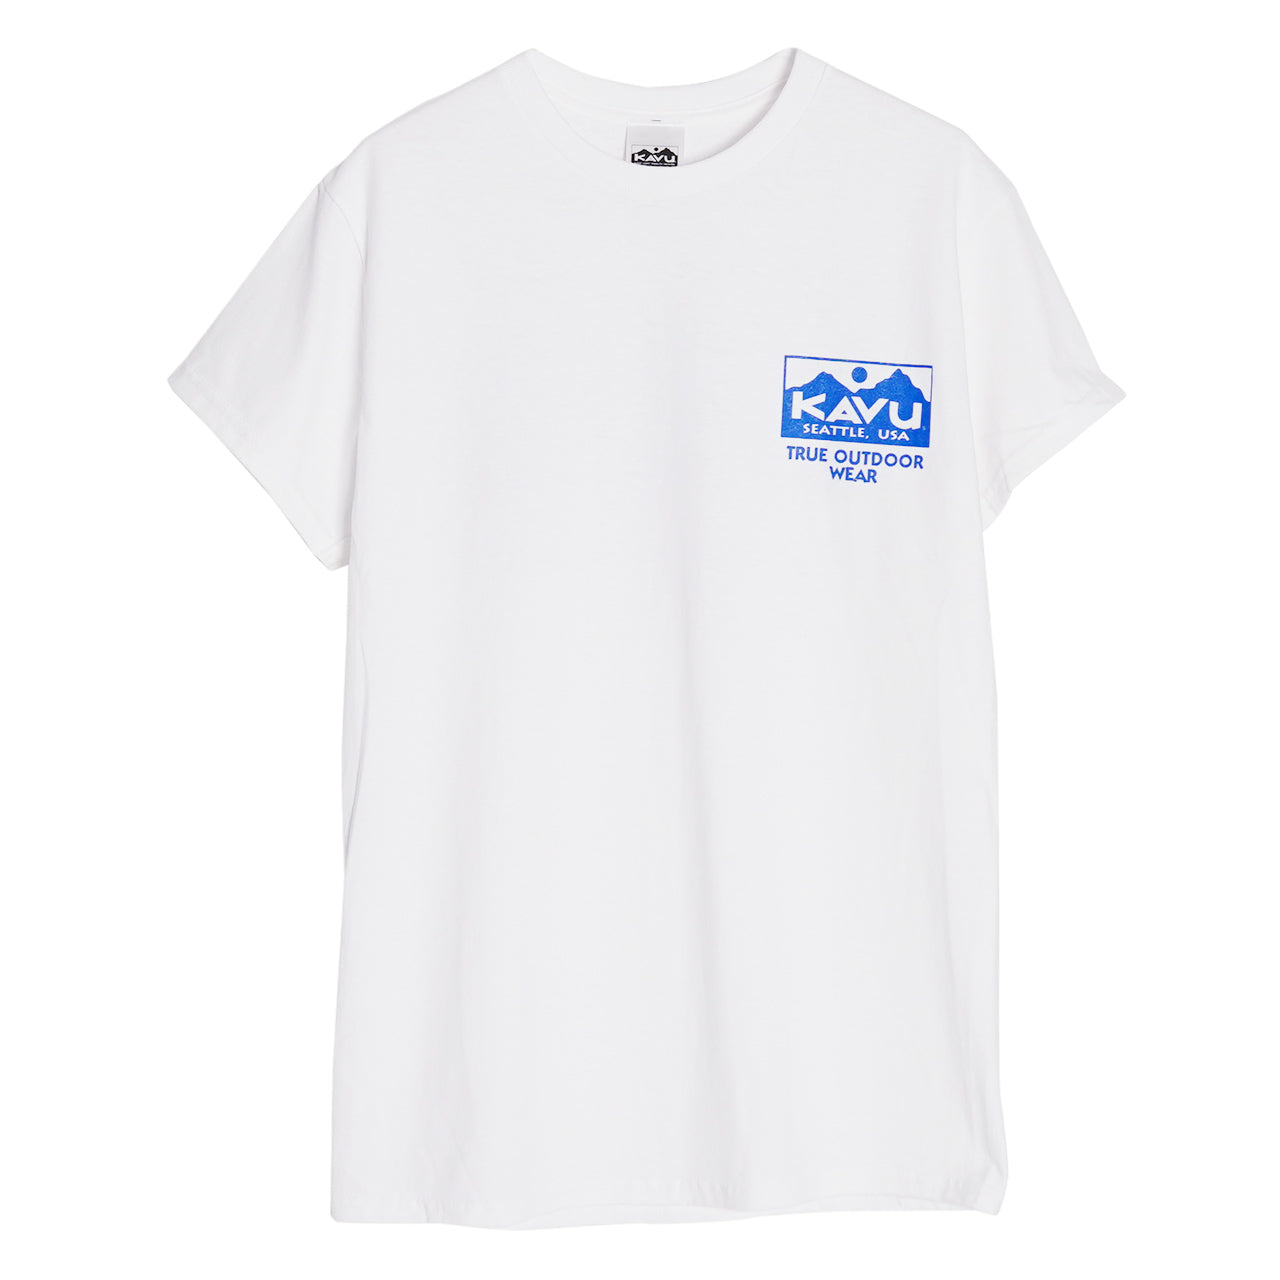 【アウトレット！30%OFF】KAVU カブー プリントTシャツ カットソー トゥルー ロゴ ティー True Logo Tee 19821842 正規取扱店